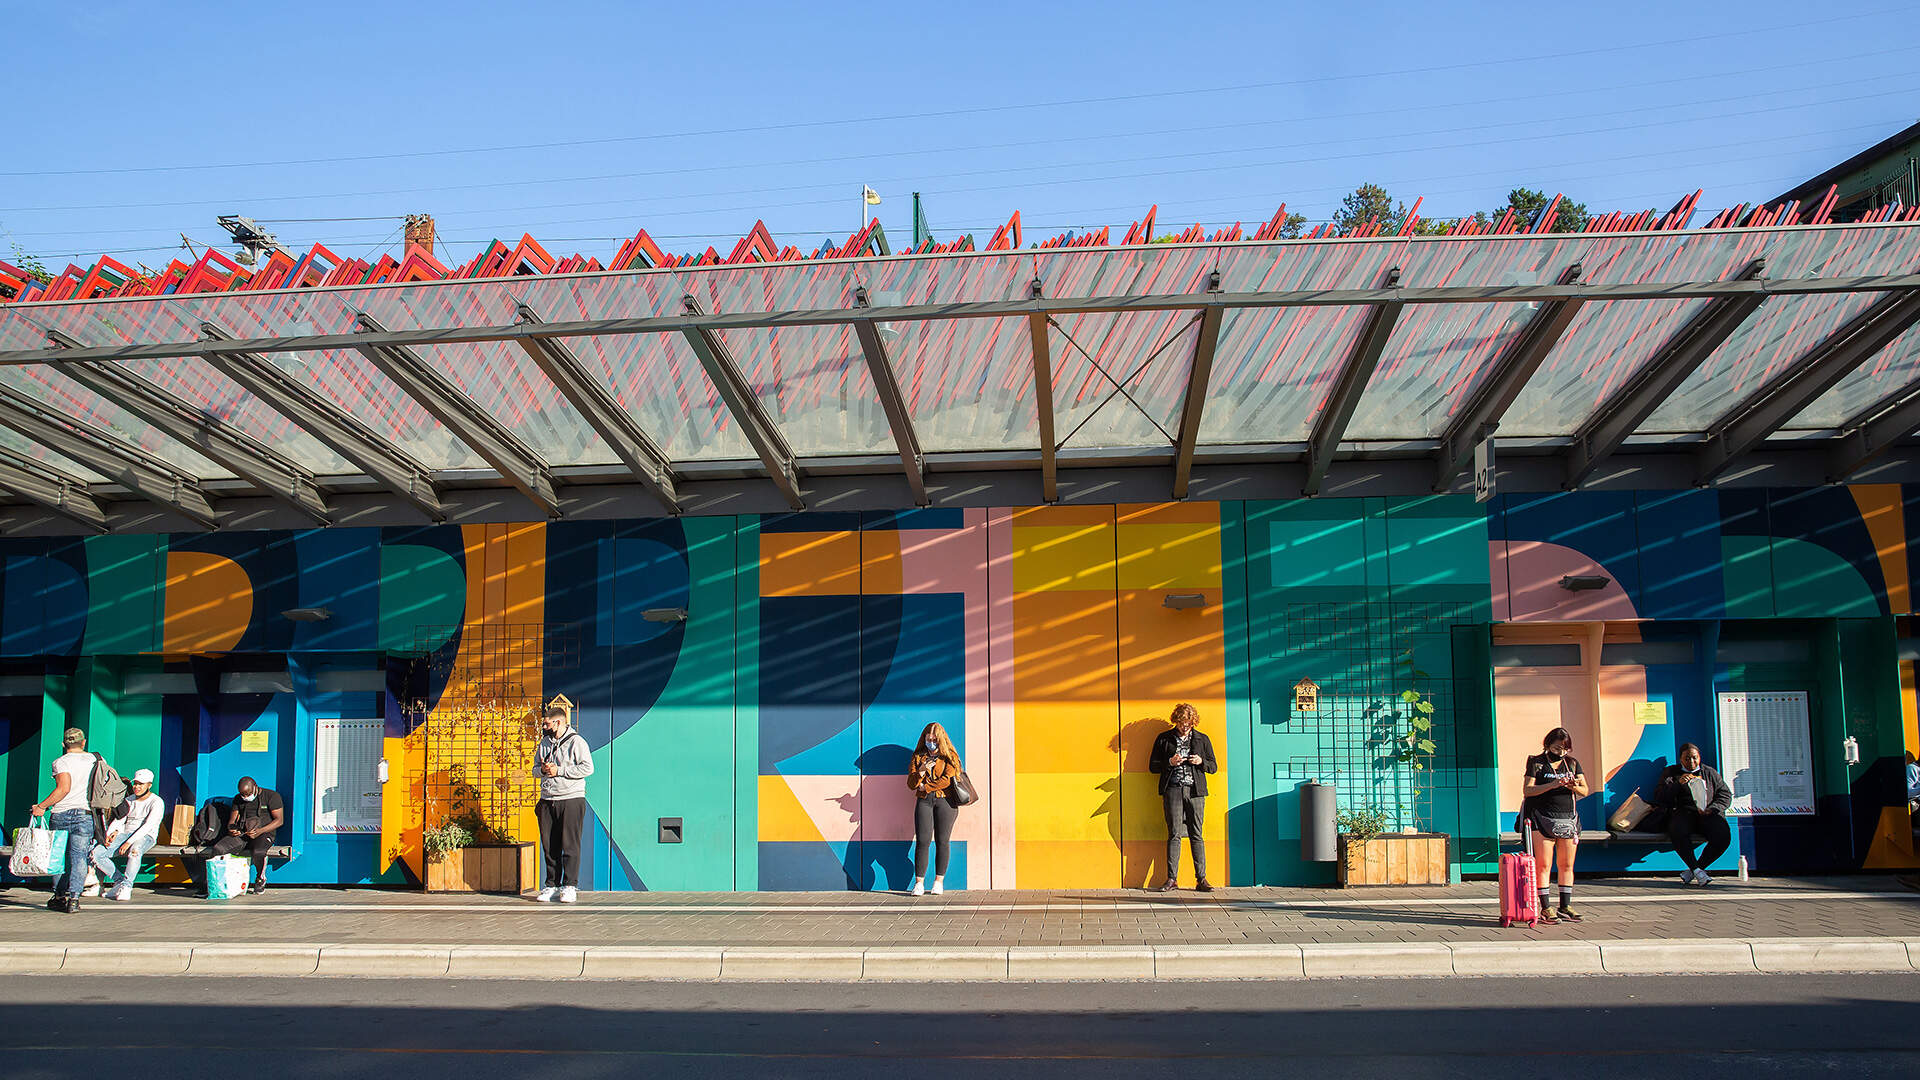 Bahnhof Esch / Busbahnhof Farbprojekt initiiert von der KUFA